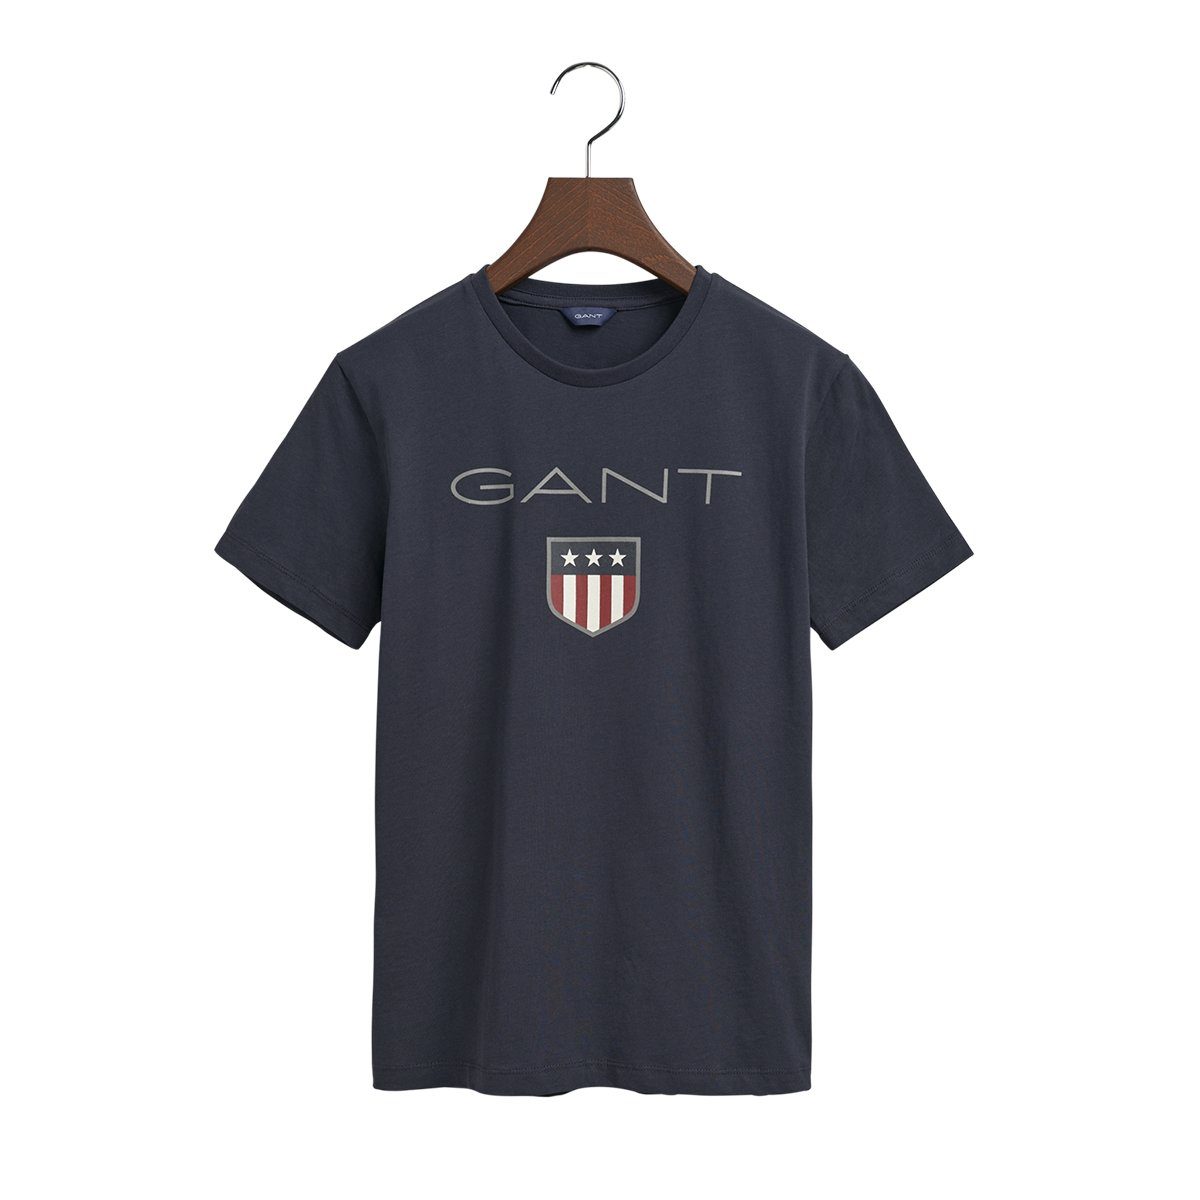 Gant T-Shirt Unisex T-Shirt Kinder Shirt SHIELD SS 905114 Dunkelblau